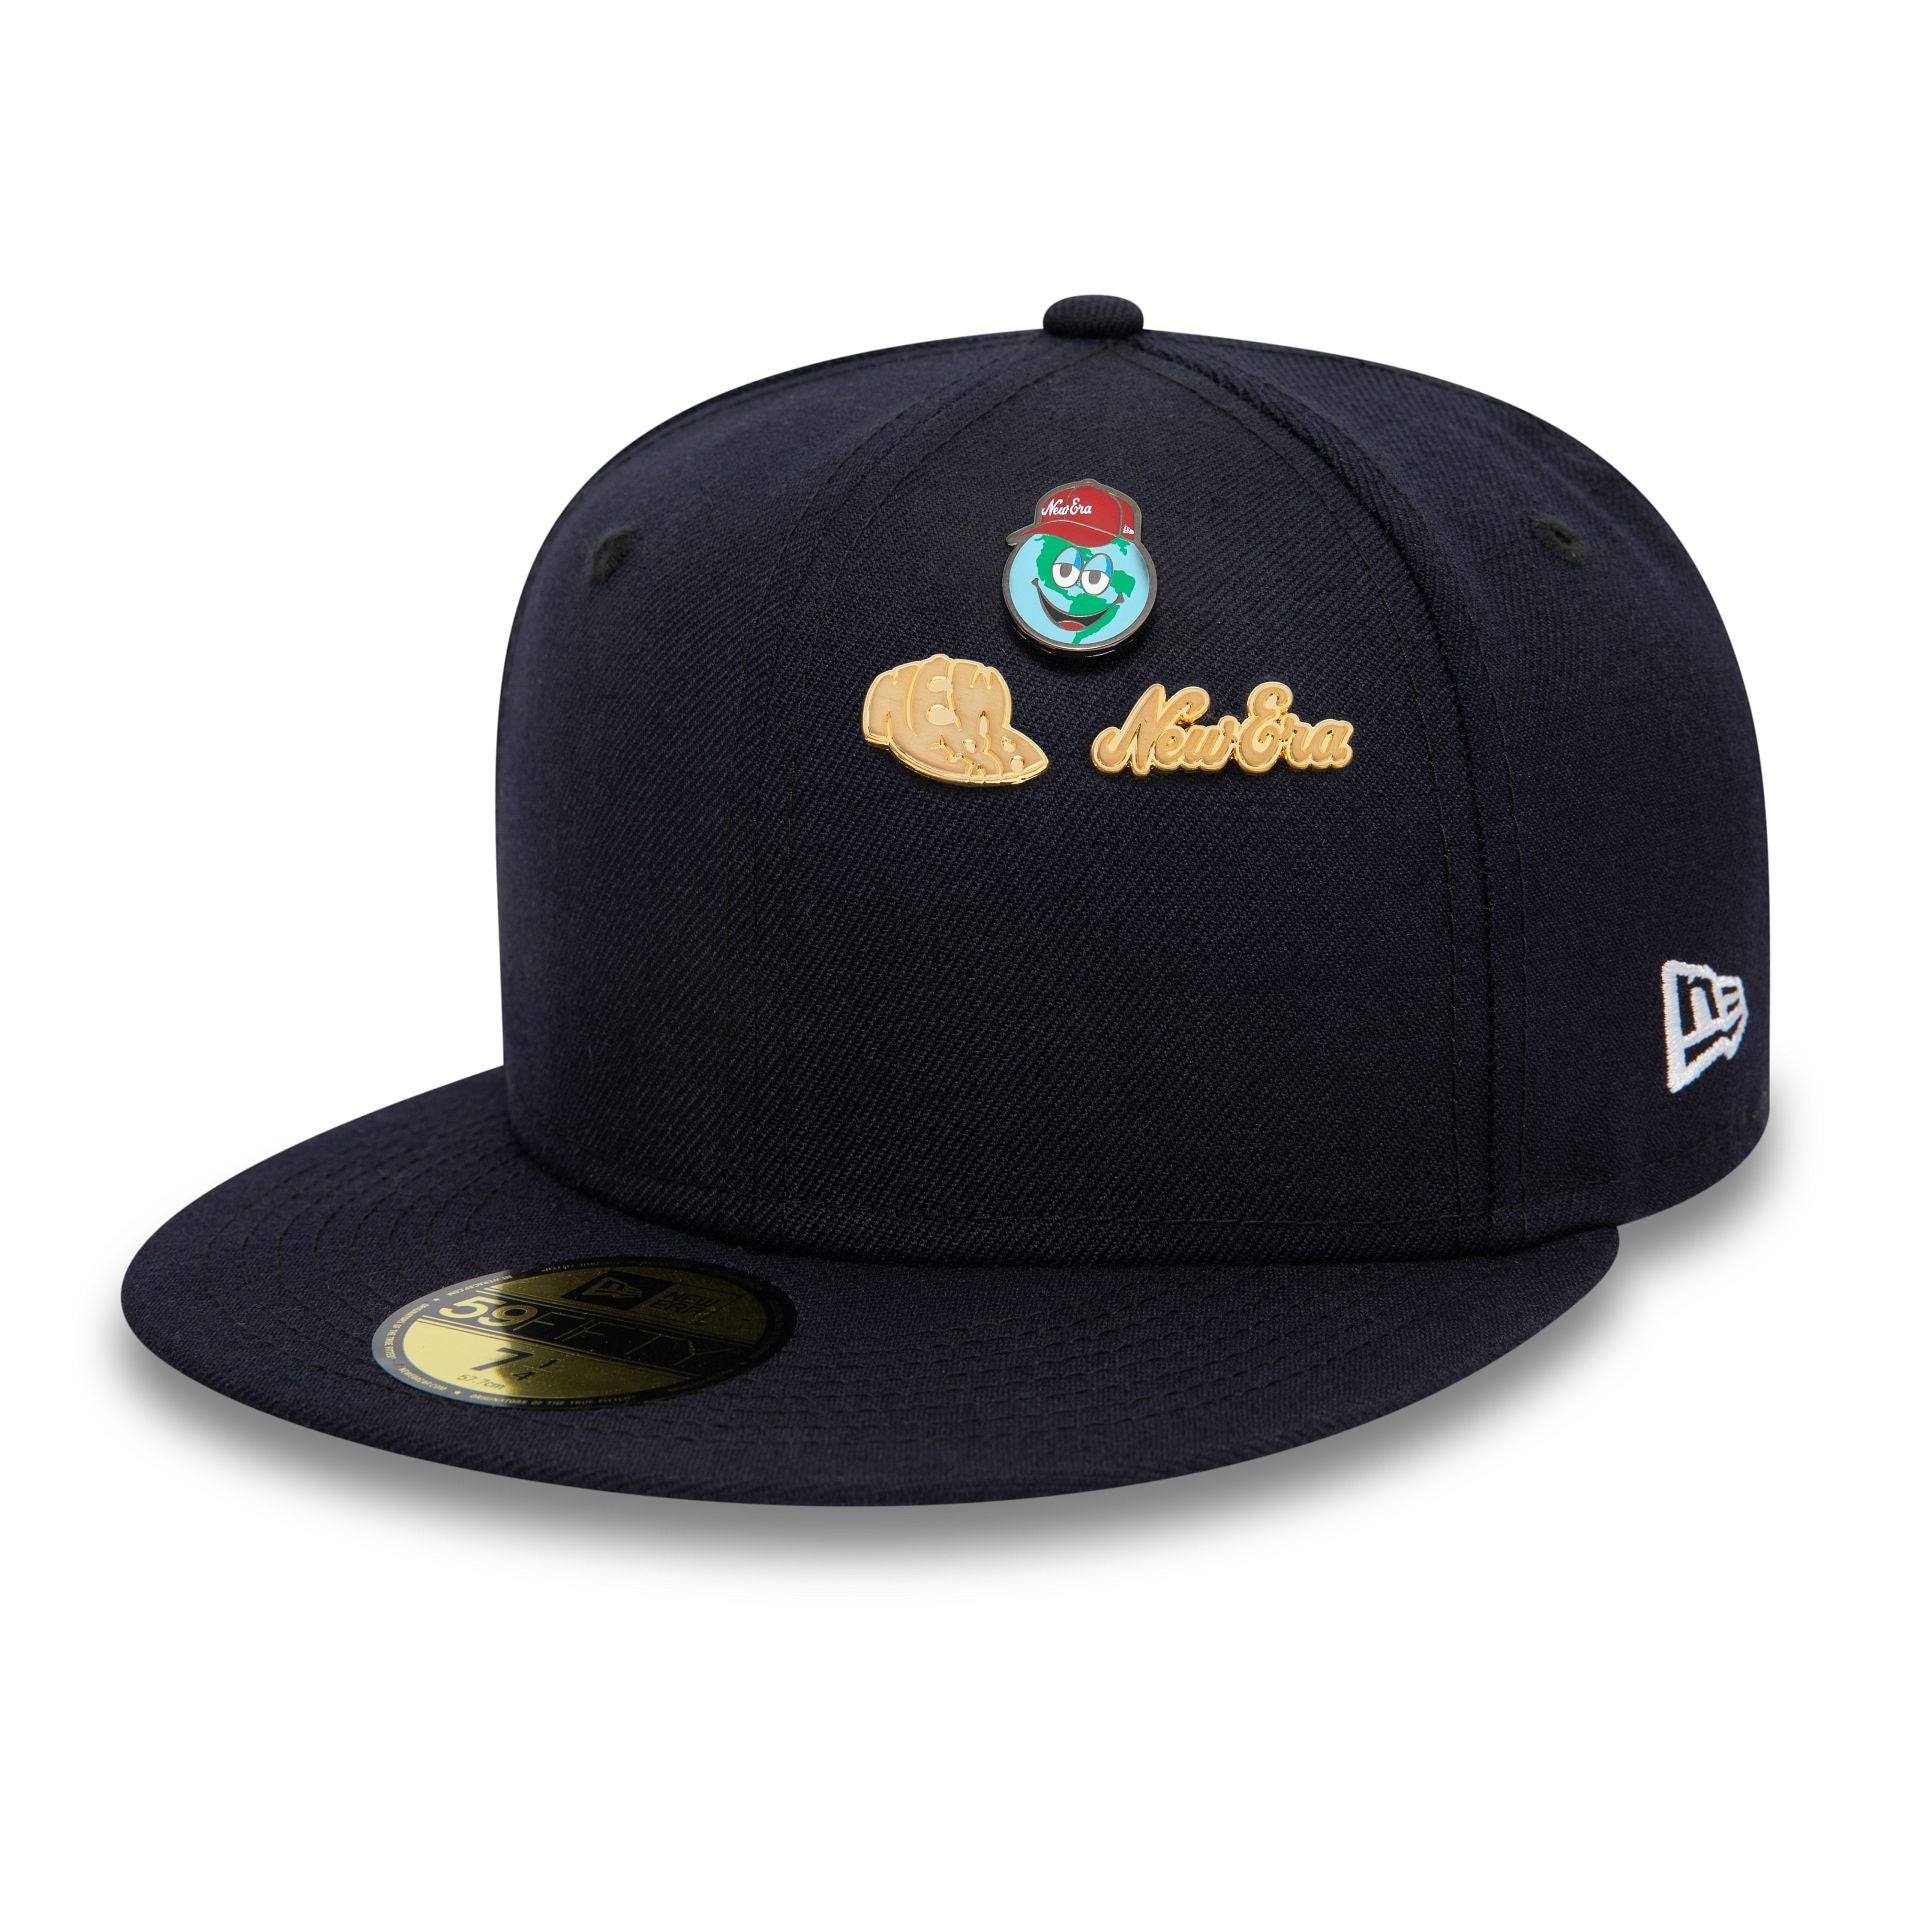 Baseball Cap Pins Offer Cheap